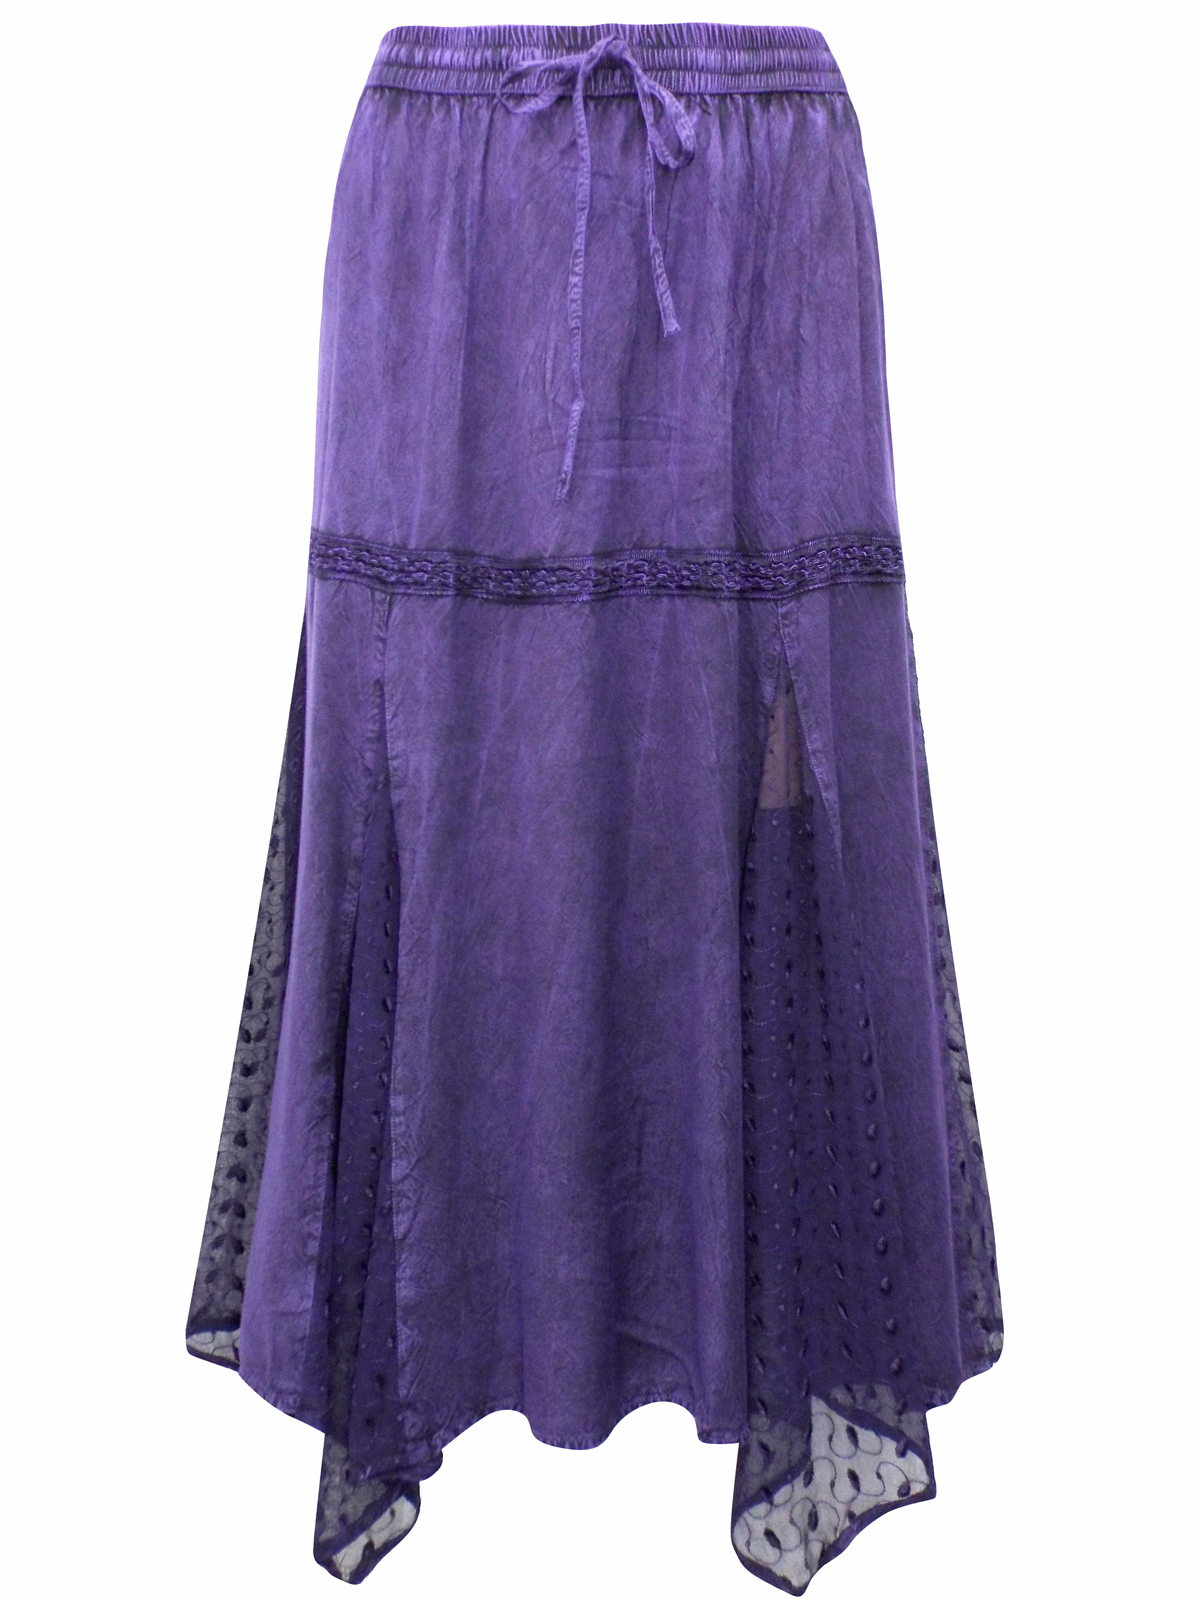 eaonplus PURPLE Dippy Lace Renaissance Capulet Ribbon Trim Skirt - Plus